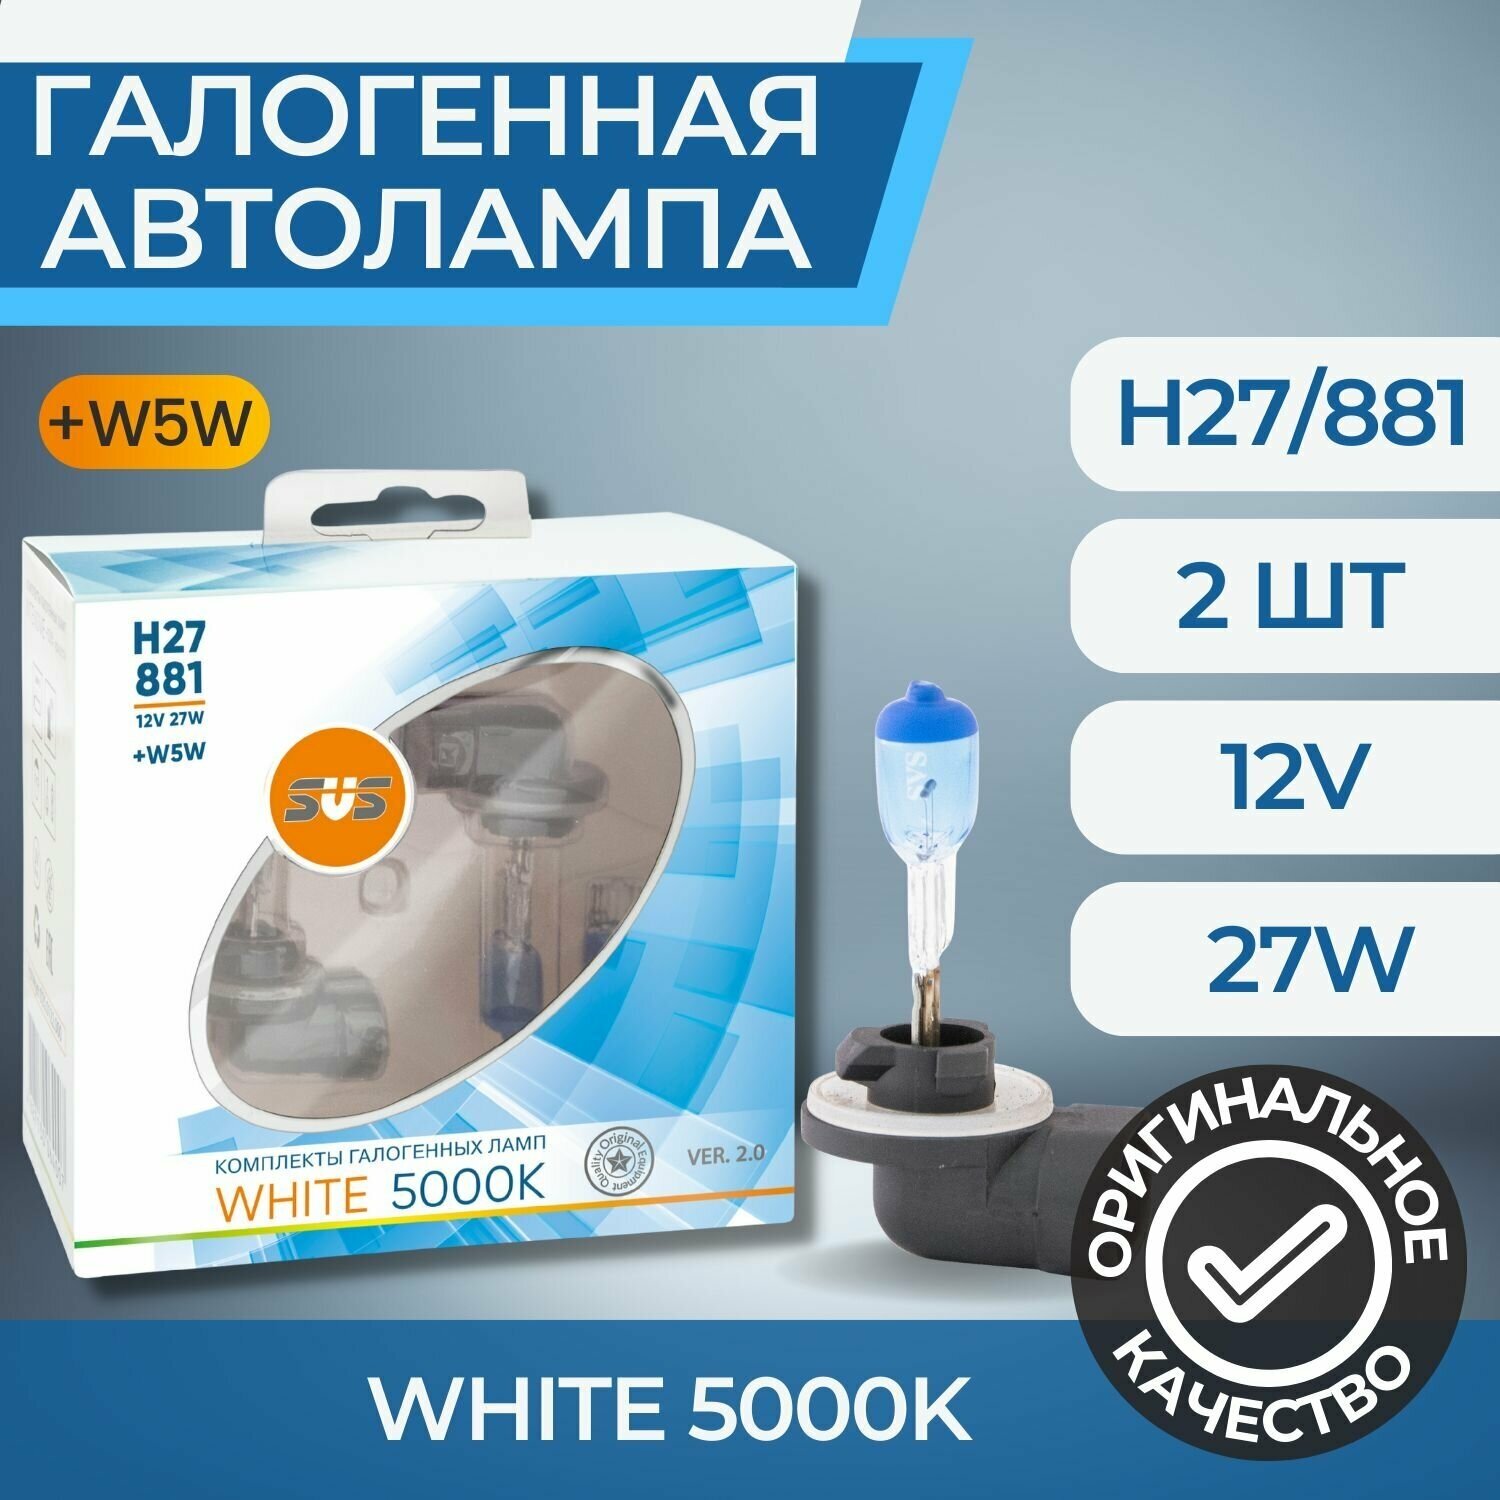 Галогенные лампы серия White 5000K 12V H27/881 27W+W5W, комплект 2шт. Ver.2.0